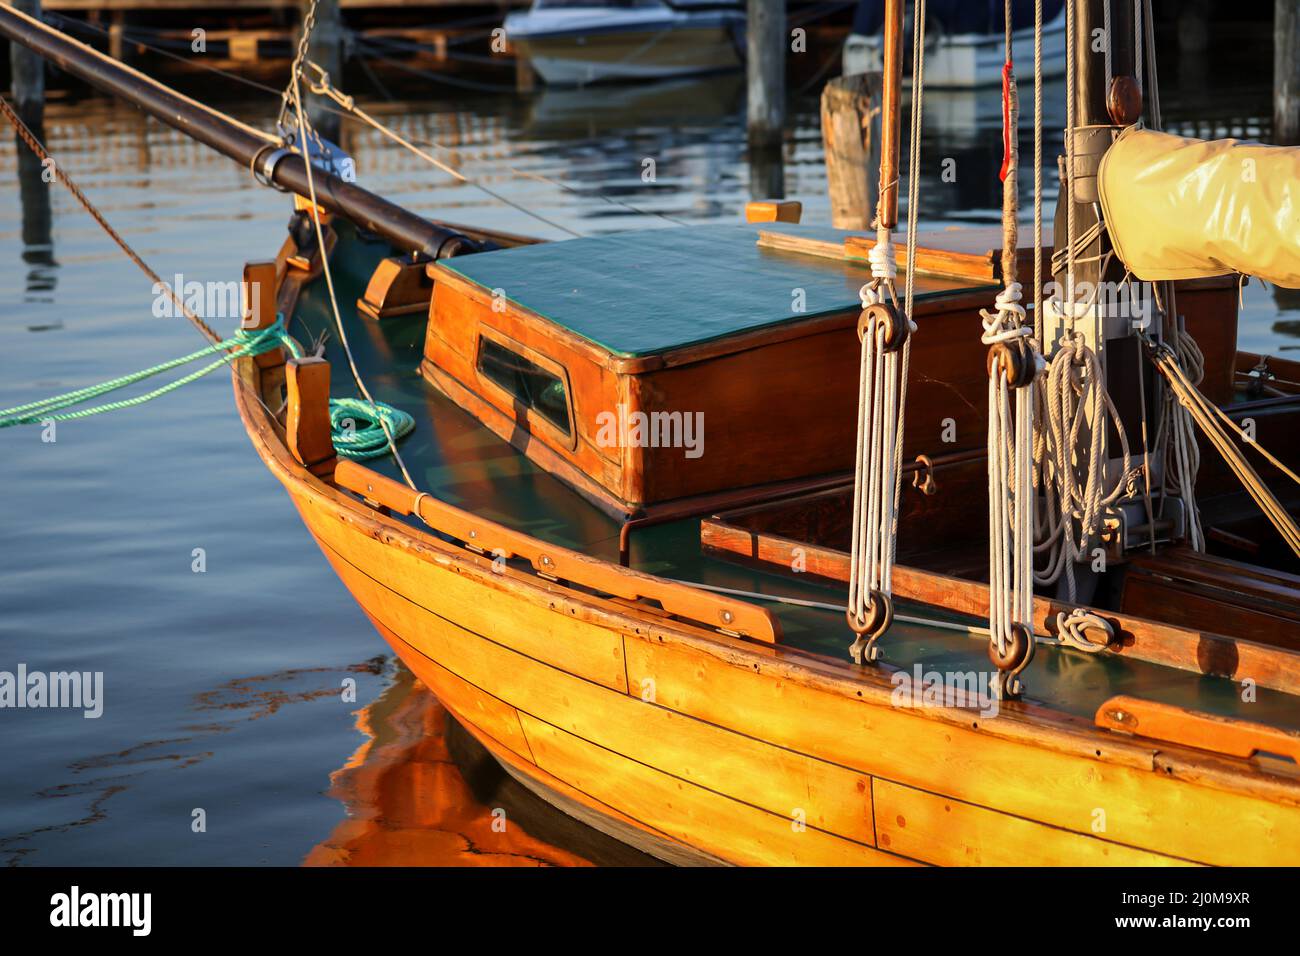 Dettagli di una barca a vela. una barca a vela con scafo in legno lavorato al meglio. Foto Stock